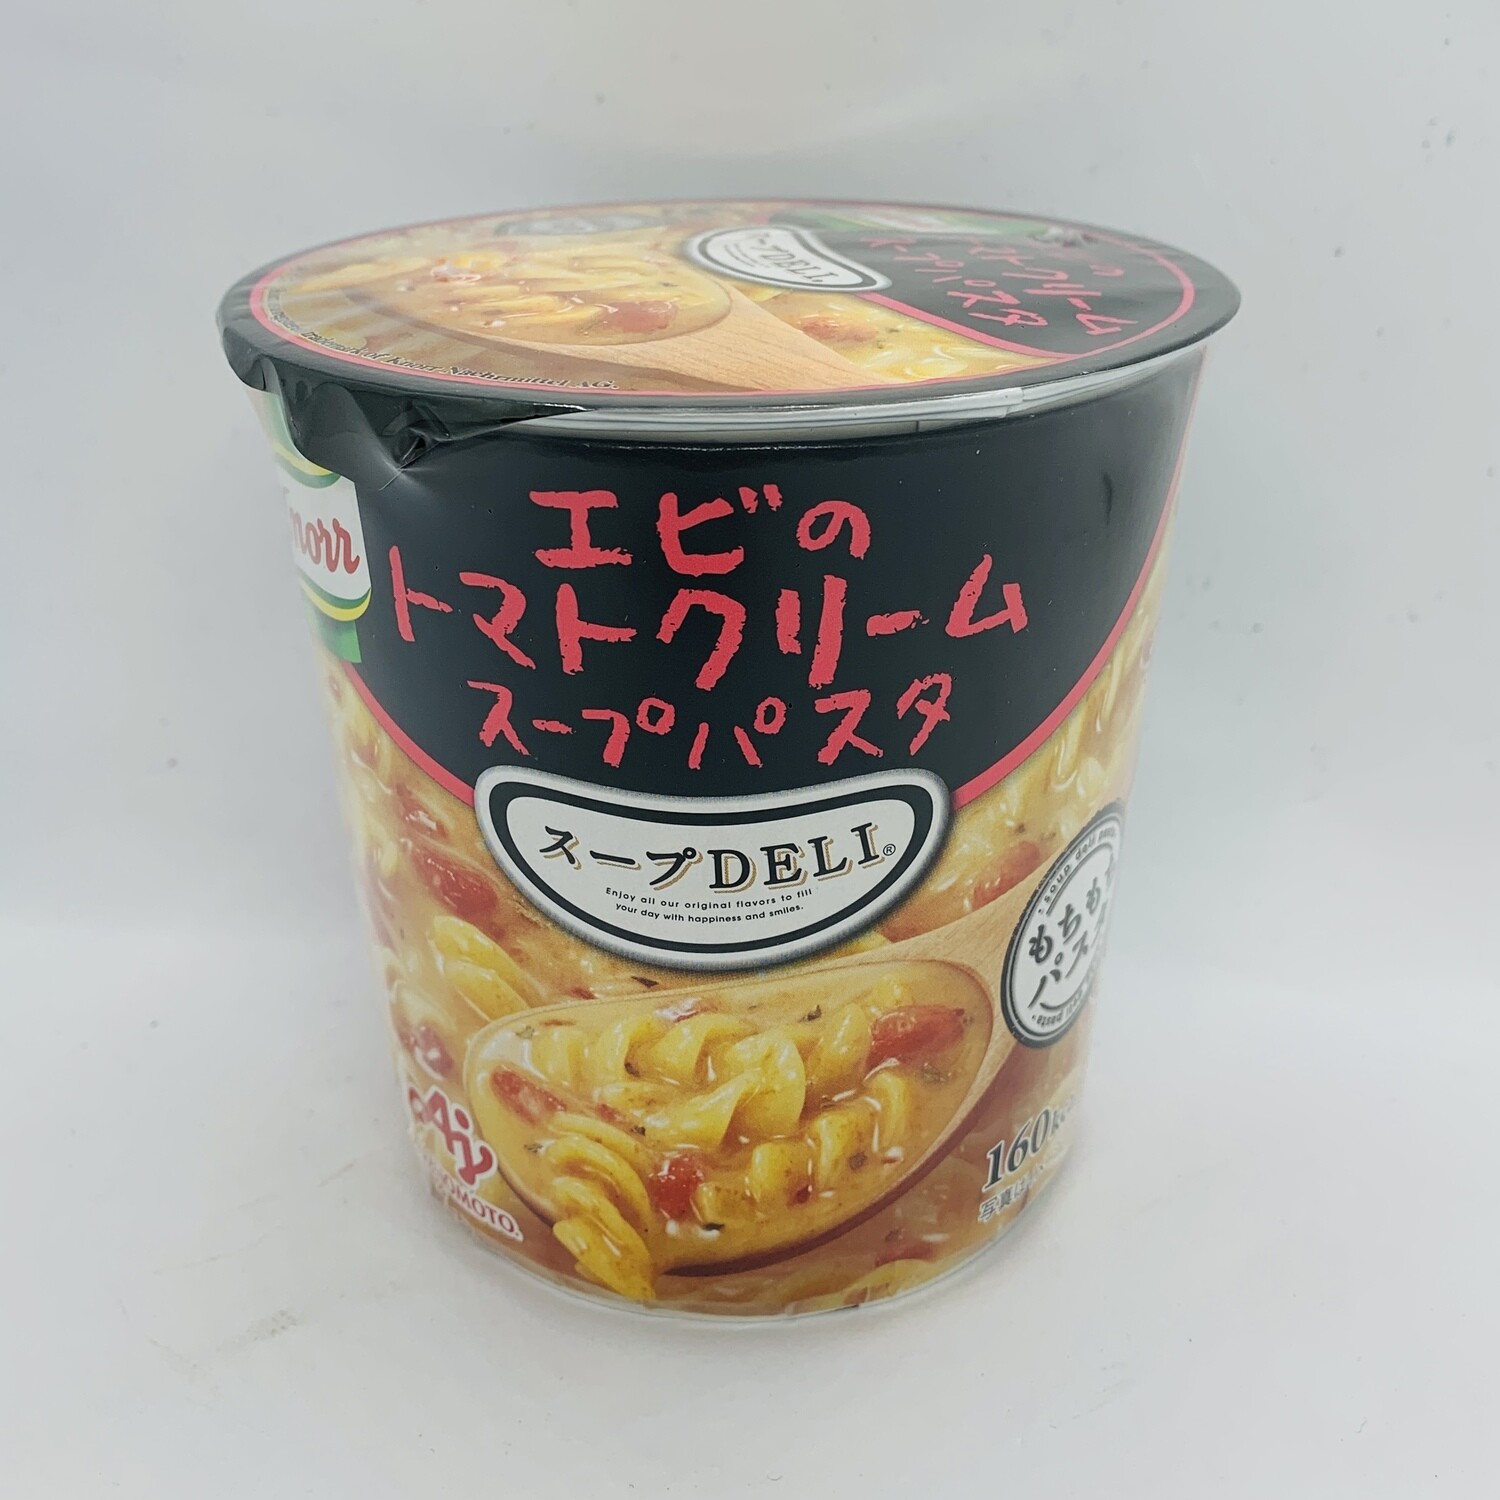 Knorr Soup Pasta Tomato Cream